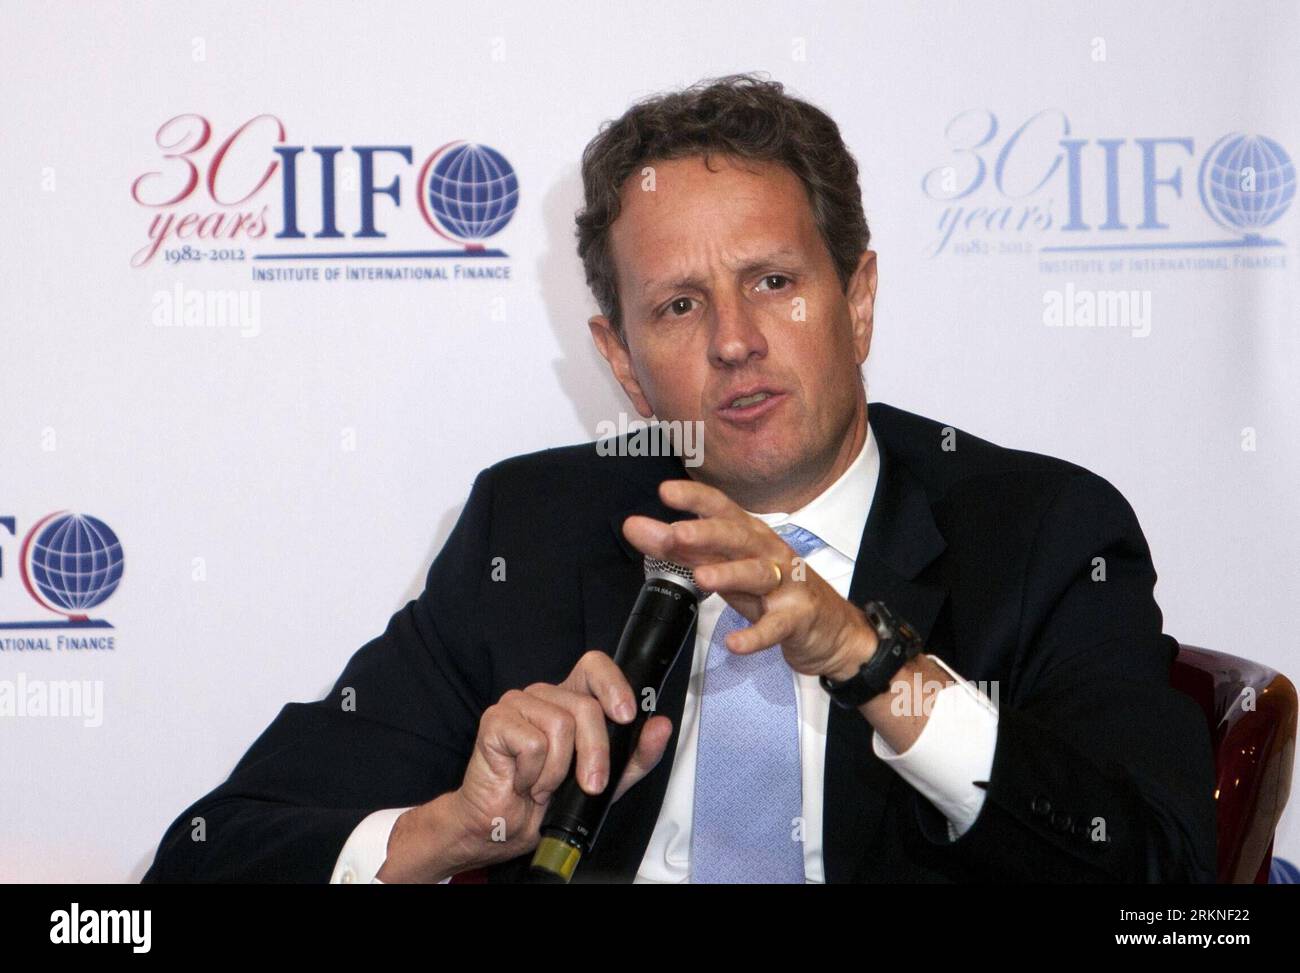 Bildnummer : 57108120 Datum : 25.02.2012 Copyright : imago/Xinhua (120225) -- MEXICO, 25 février 2012 (Xinhua) -- Timothy Geithner, secrétaire américain au Trésor, participe à une conférence lors de la 1e réunion des ministres des Finances et des présidents des banques centrales du G20, à Mexico, capitale du Mexique, le 25 février 2012. (Xinhua/Shi Sisi) (zx) MEXICO-MEXICO CITY-G20 PUBLICATIONxNOTxINxCHN People Politik Porträt xdp x0x 2012 quer premiumd 57108120 Date 25 02 2012 Copyright Imago XINHUA Mexico Fév 25 2012 XINHUA U S Secrétaire au Trésor Timothy Geithner participe à une conférence Banque D'Images